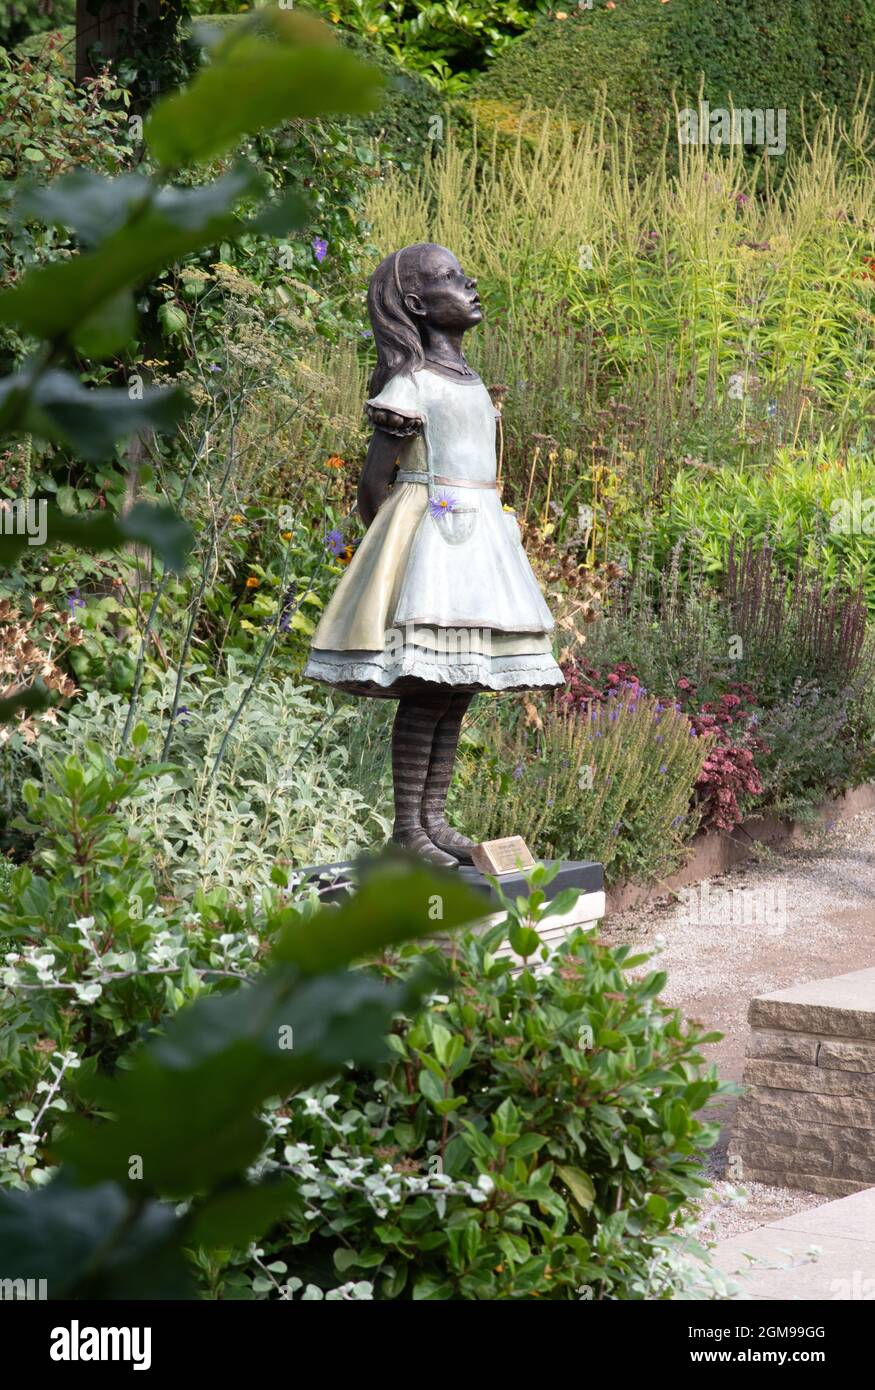 Robert James sculpture Alice in Wonderland Stock Photo